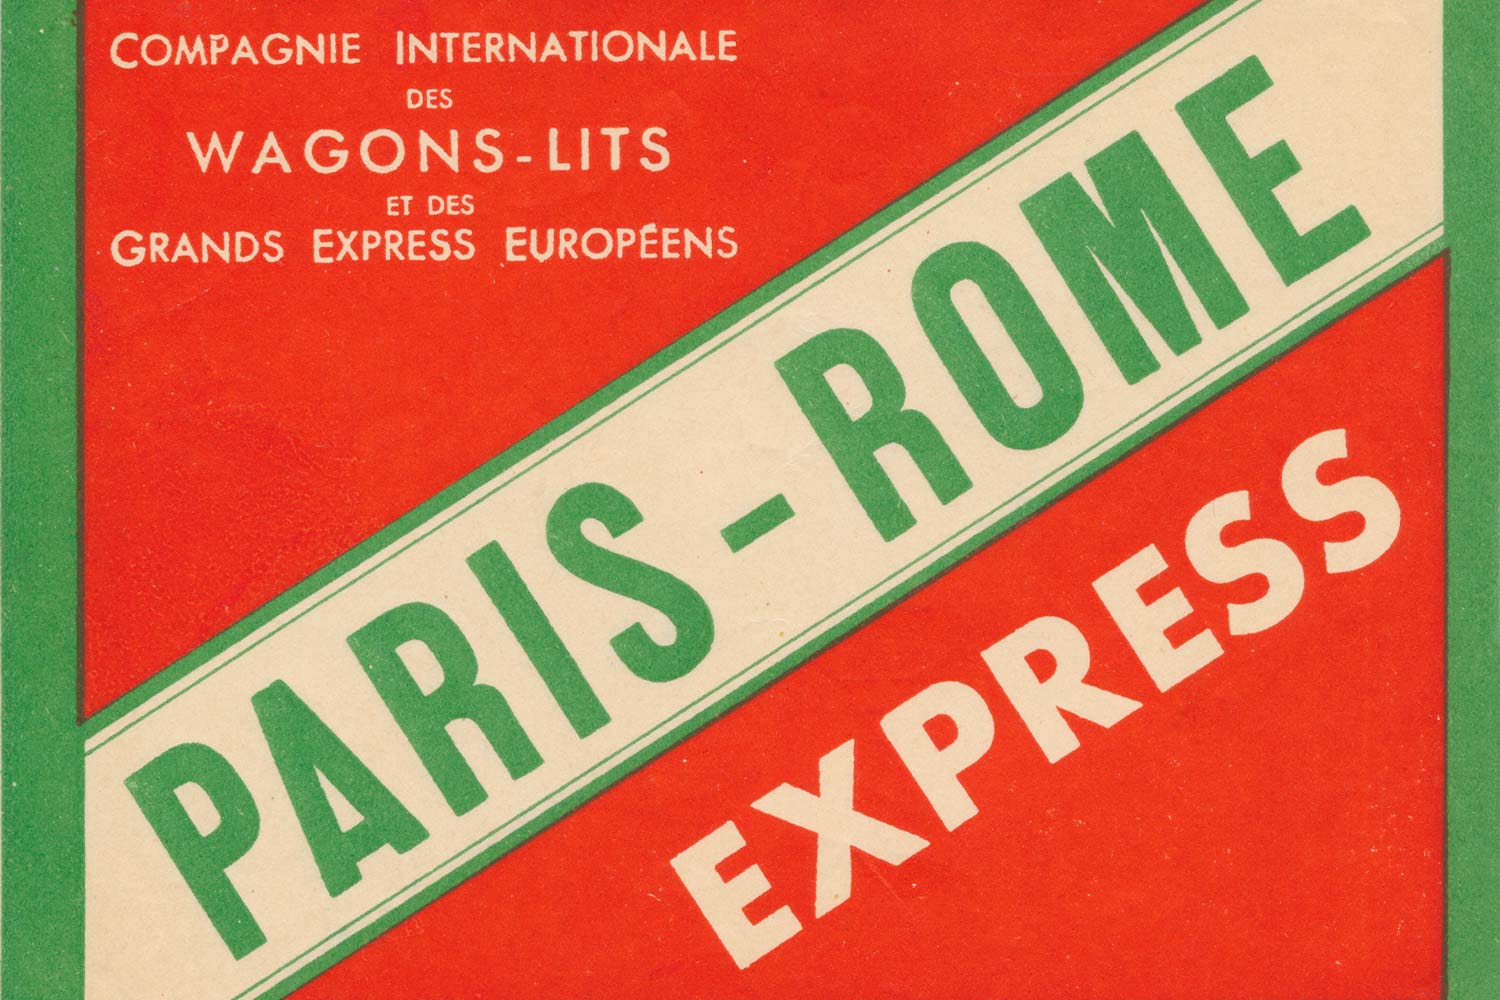 Etichetta per i bagagli del percorso Parigi-Roma-Express della Compagnie Internationale des Wagons-Lits (Anni 1920-1930) ©Fonds de dotation Orient Express